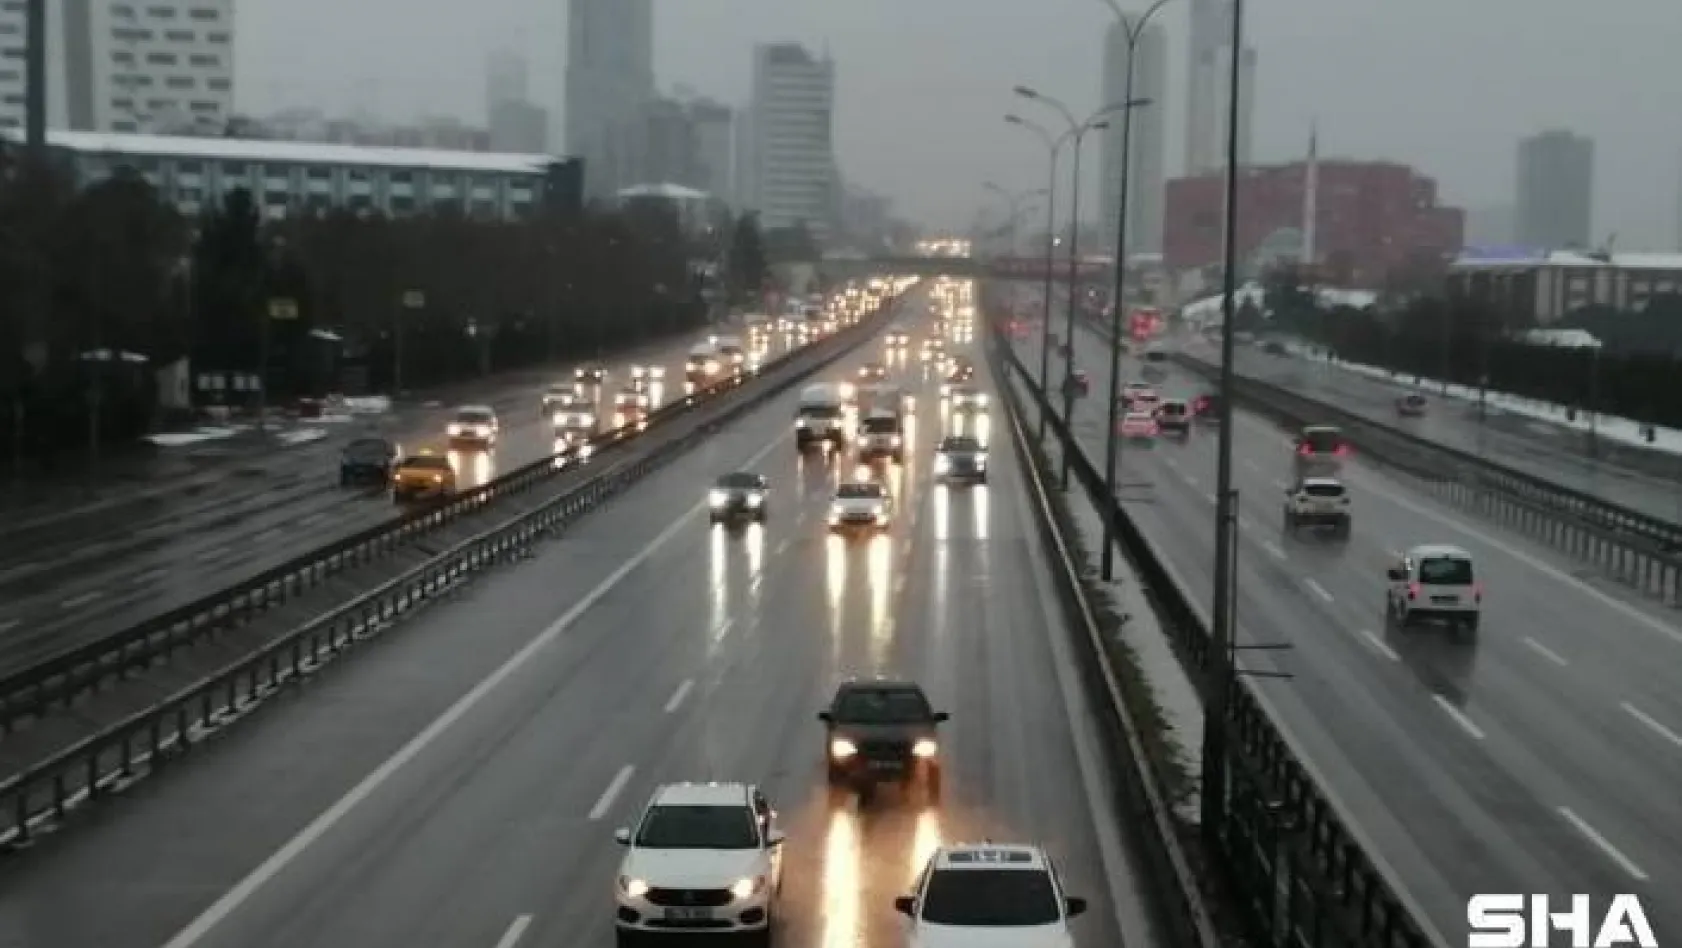 İstanbul'da kar E-5'te görüş mesafesini kısalttı